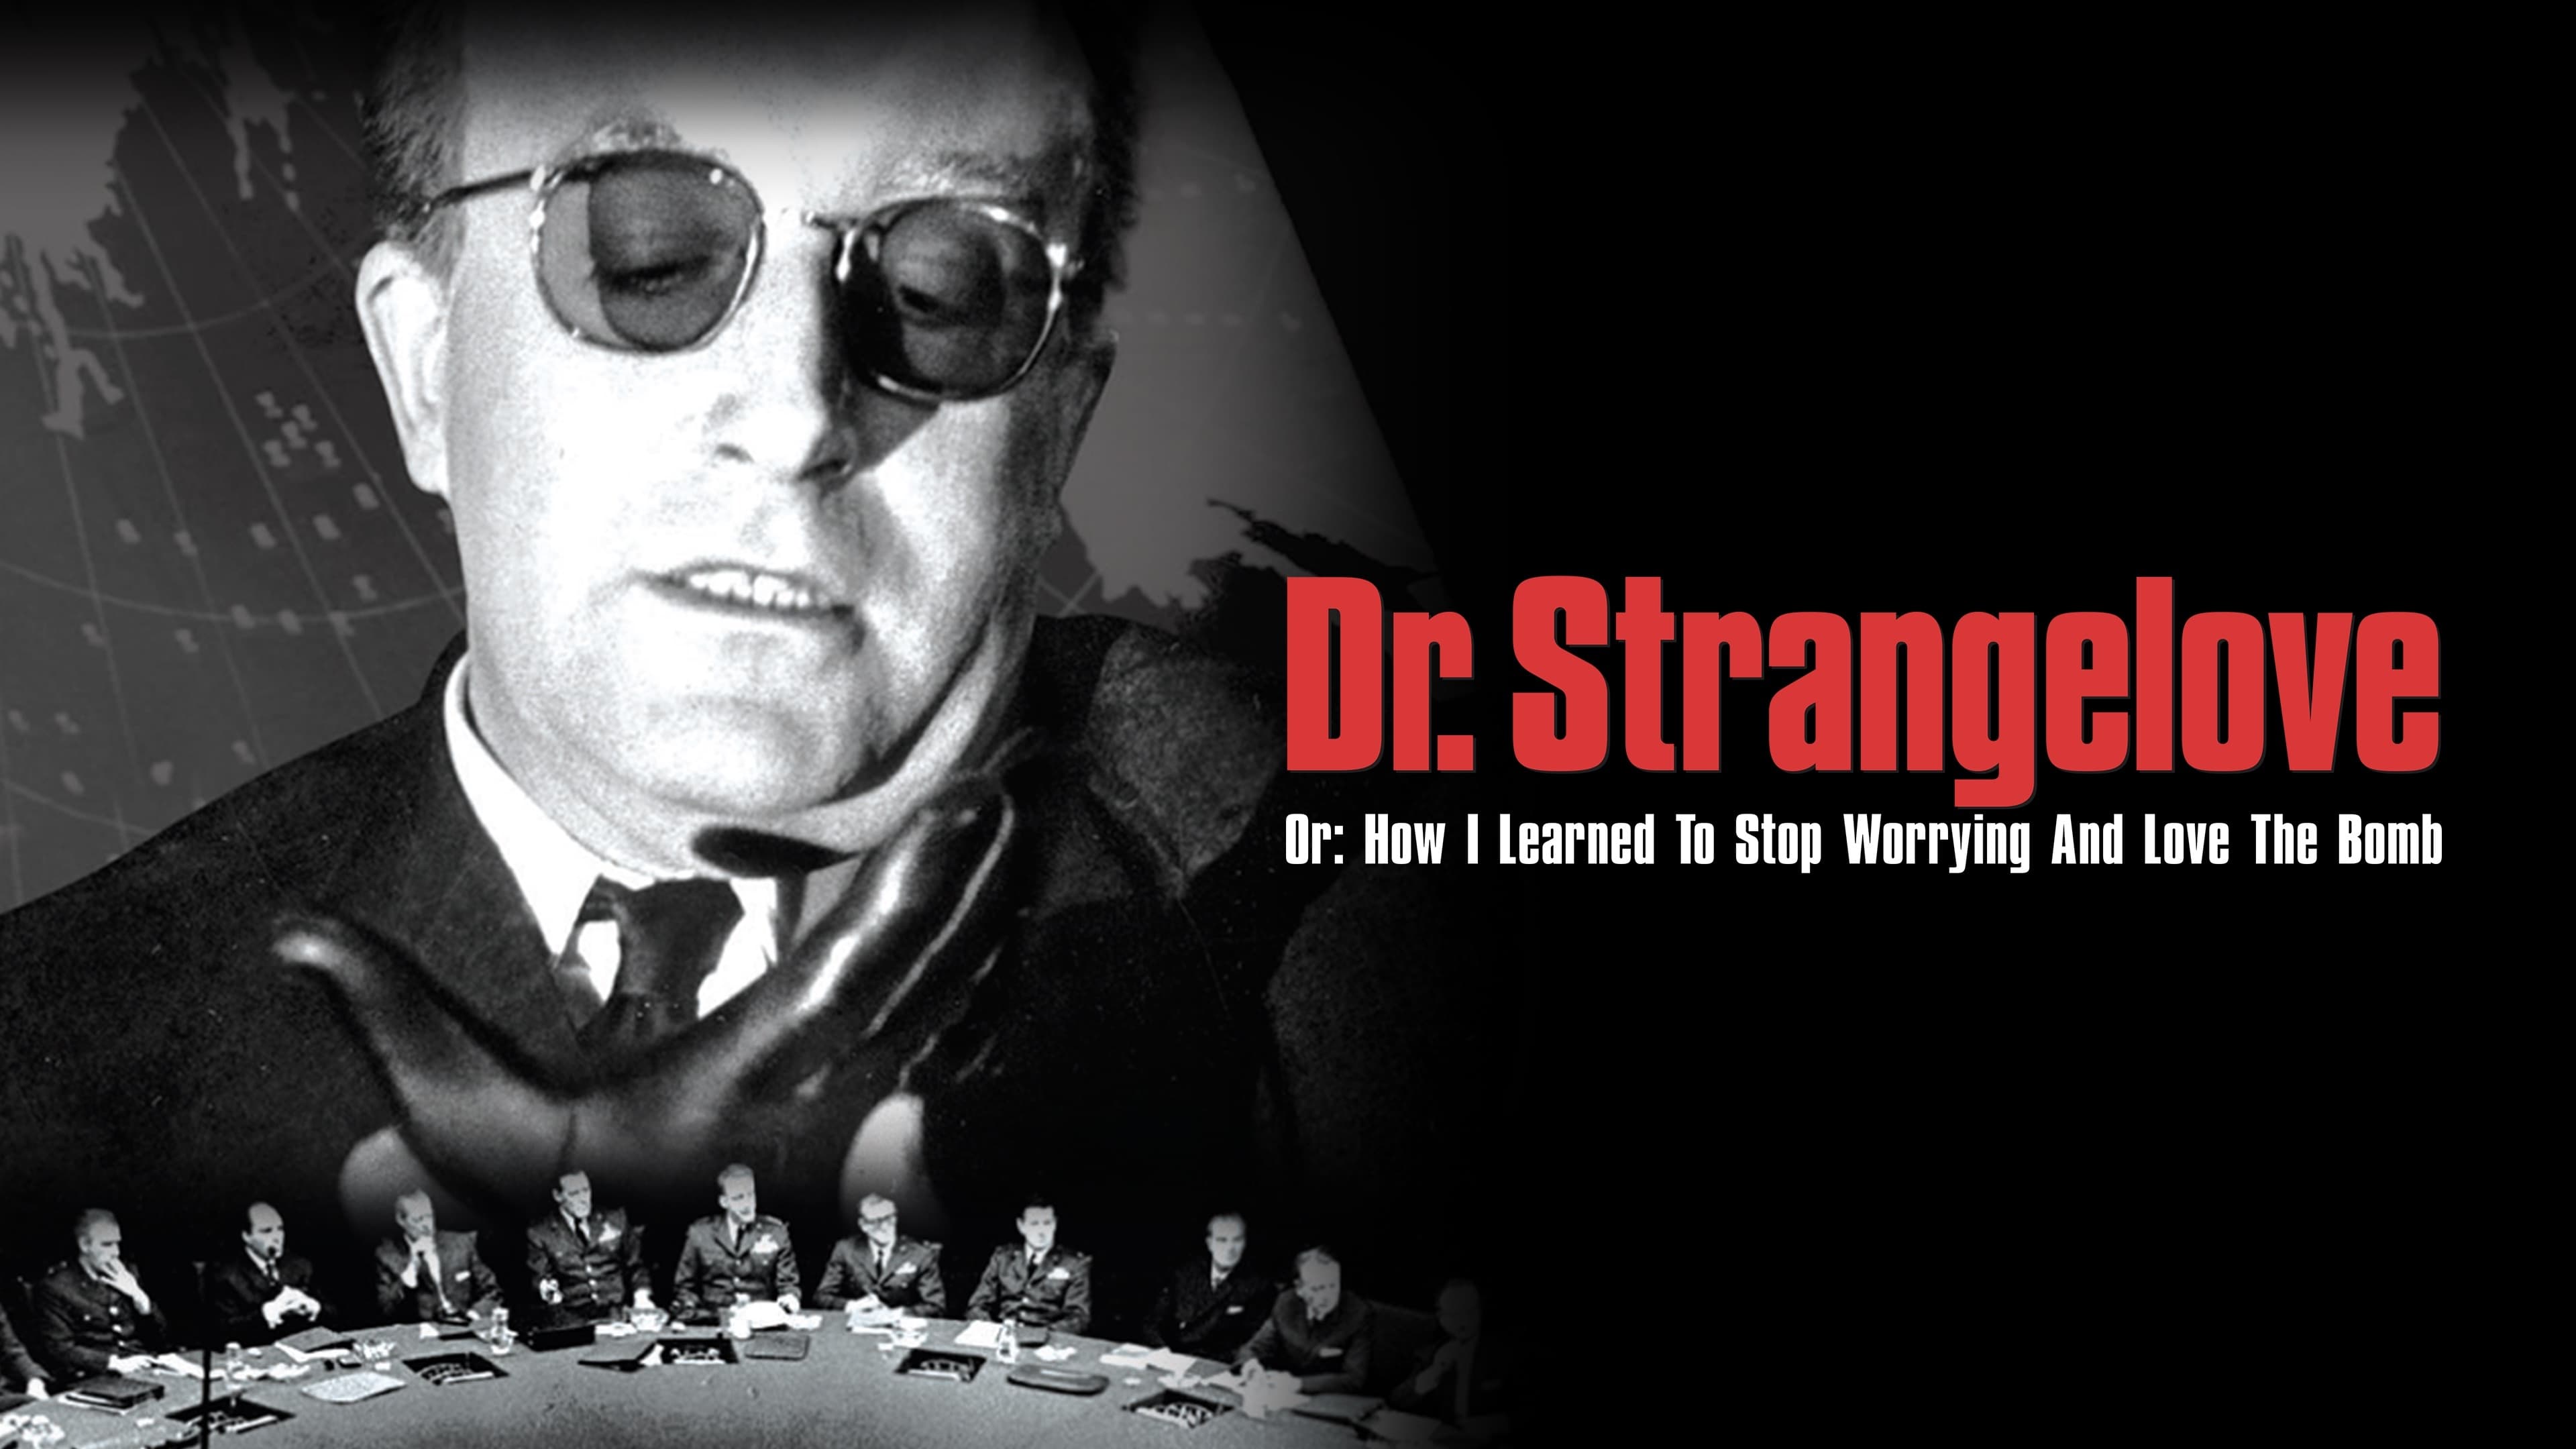 Dr. Strangelove sau: cum am învăţat să nu-mi mai fac griji şi să iubesc bomba